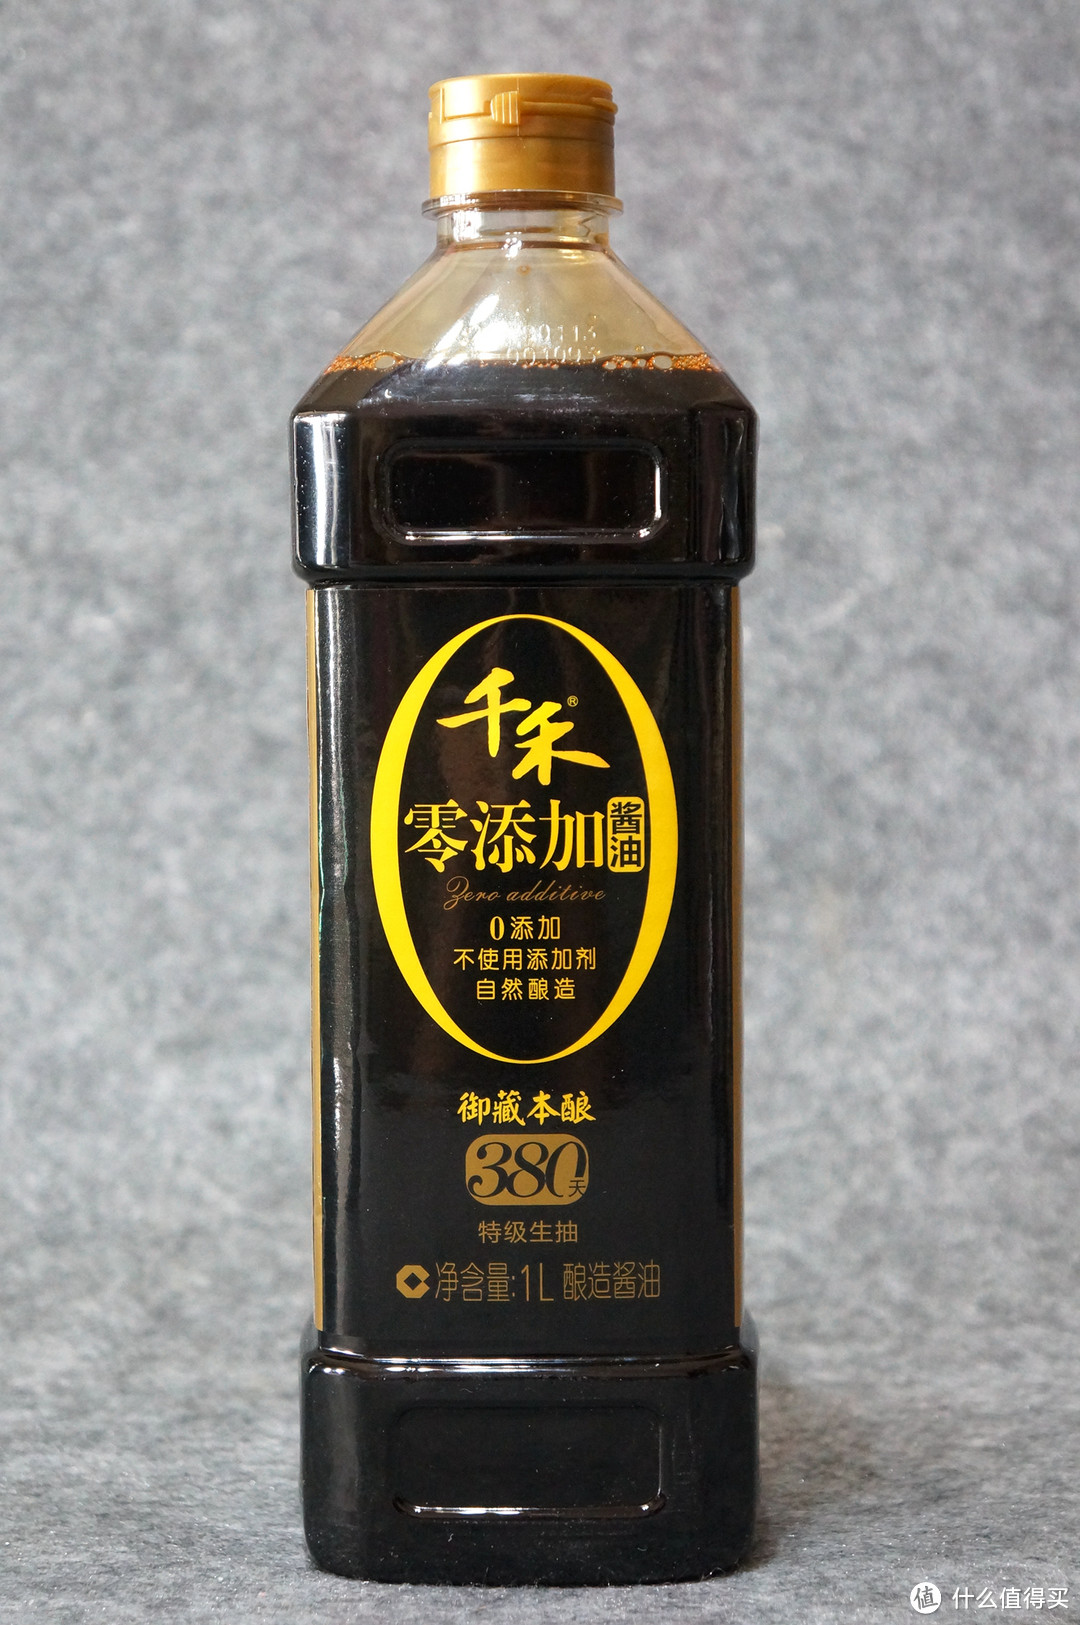 NO MSG!！零添加的美味生活新主张：最热门的纯酿造酱油“千禾”全系列点评